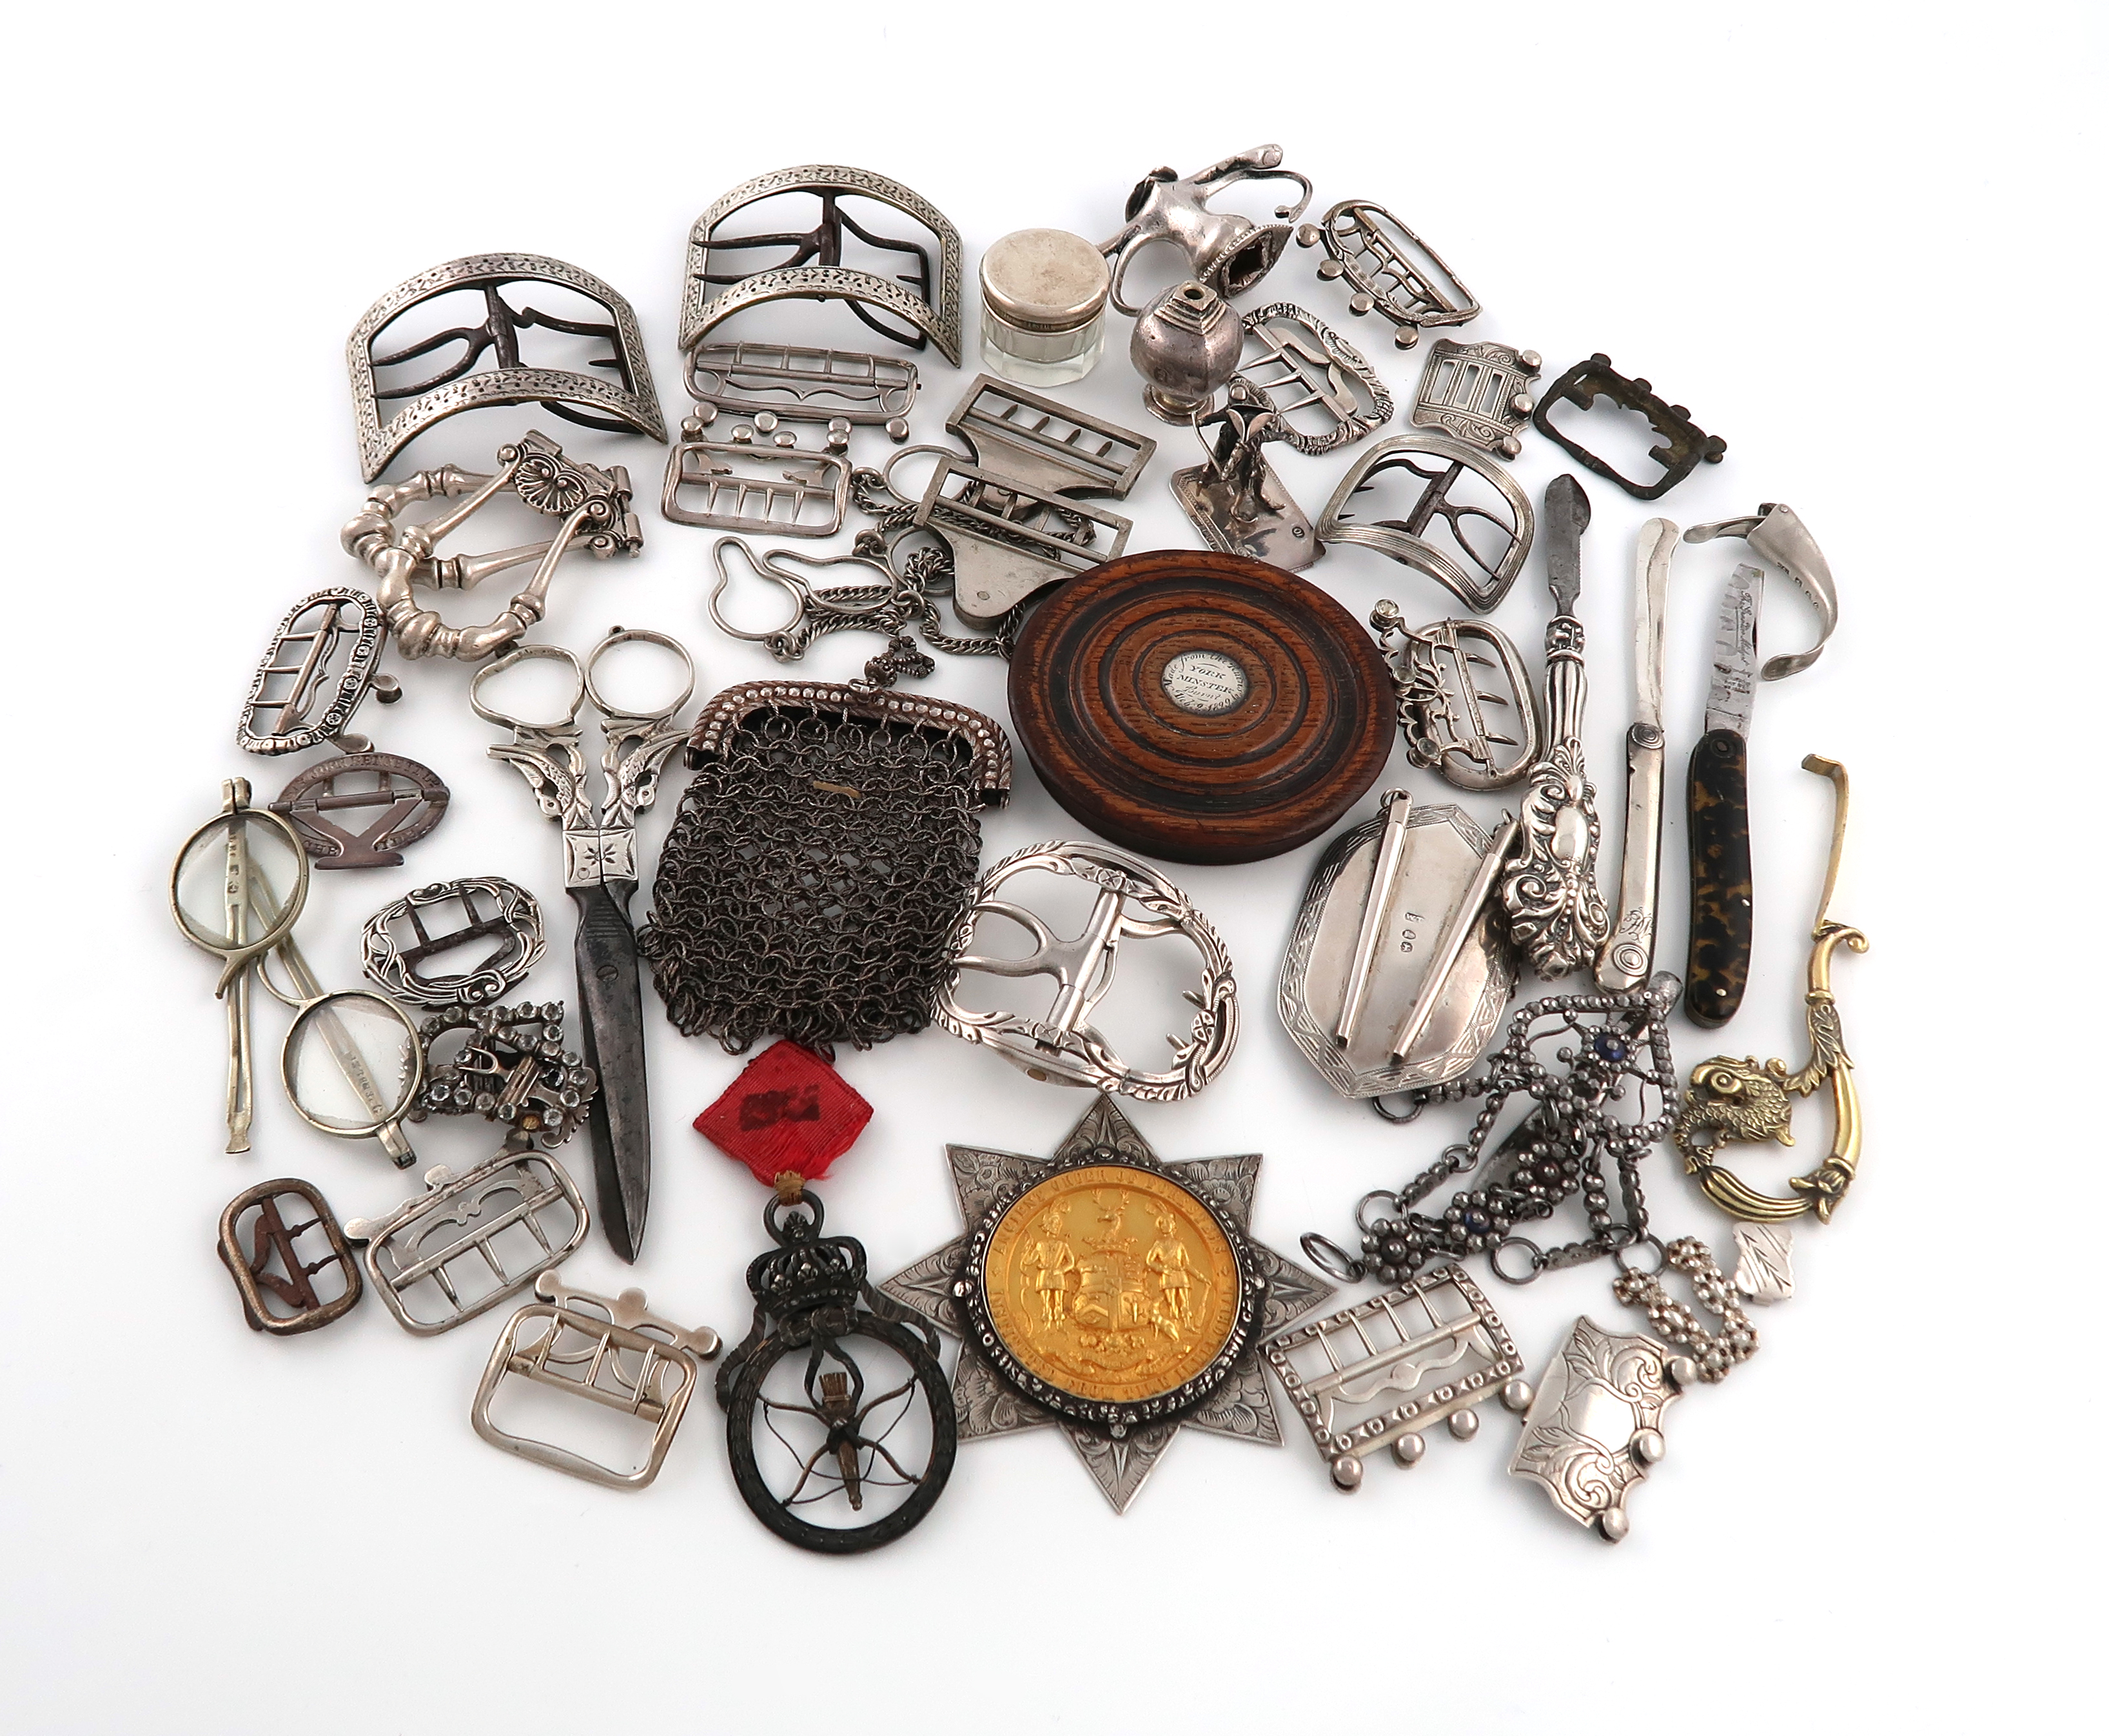 λA mixed lot of objects of vertu, comprising silver items: a Victorian Ancient Order of Foresters